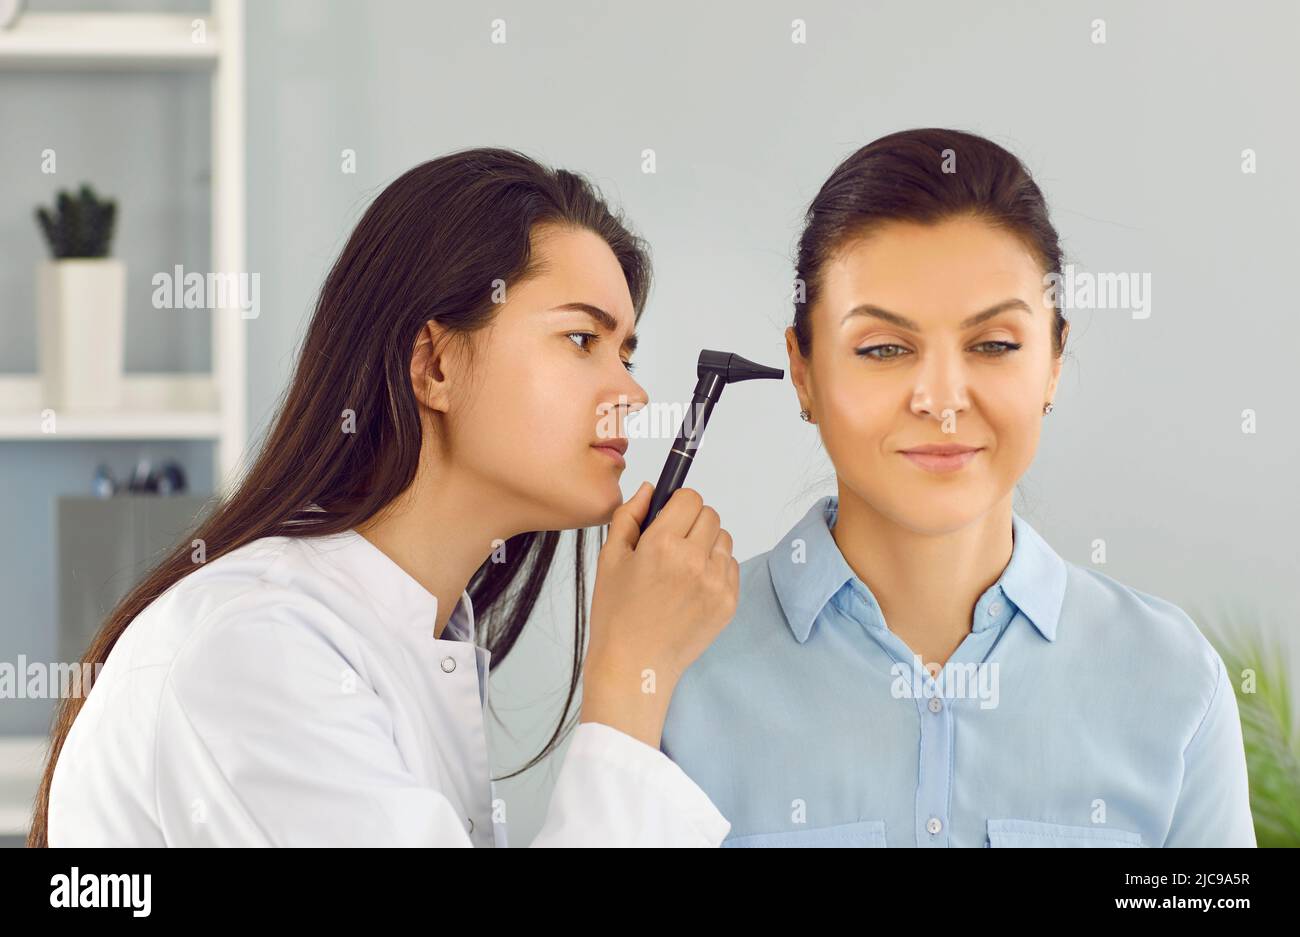 Le médecin ORL utilise l'otoscope pour examiner l'oreille de la jeune femme pendant le contrôle médical au bureau Banque D'Images